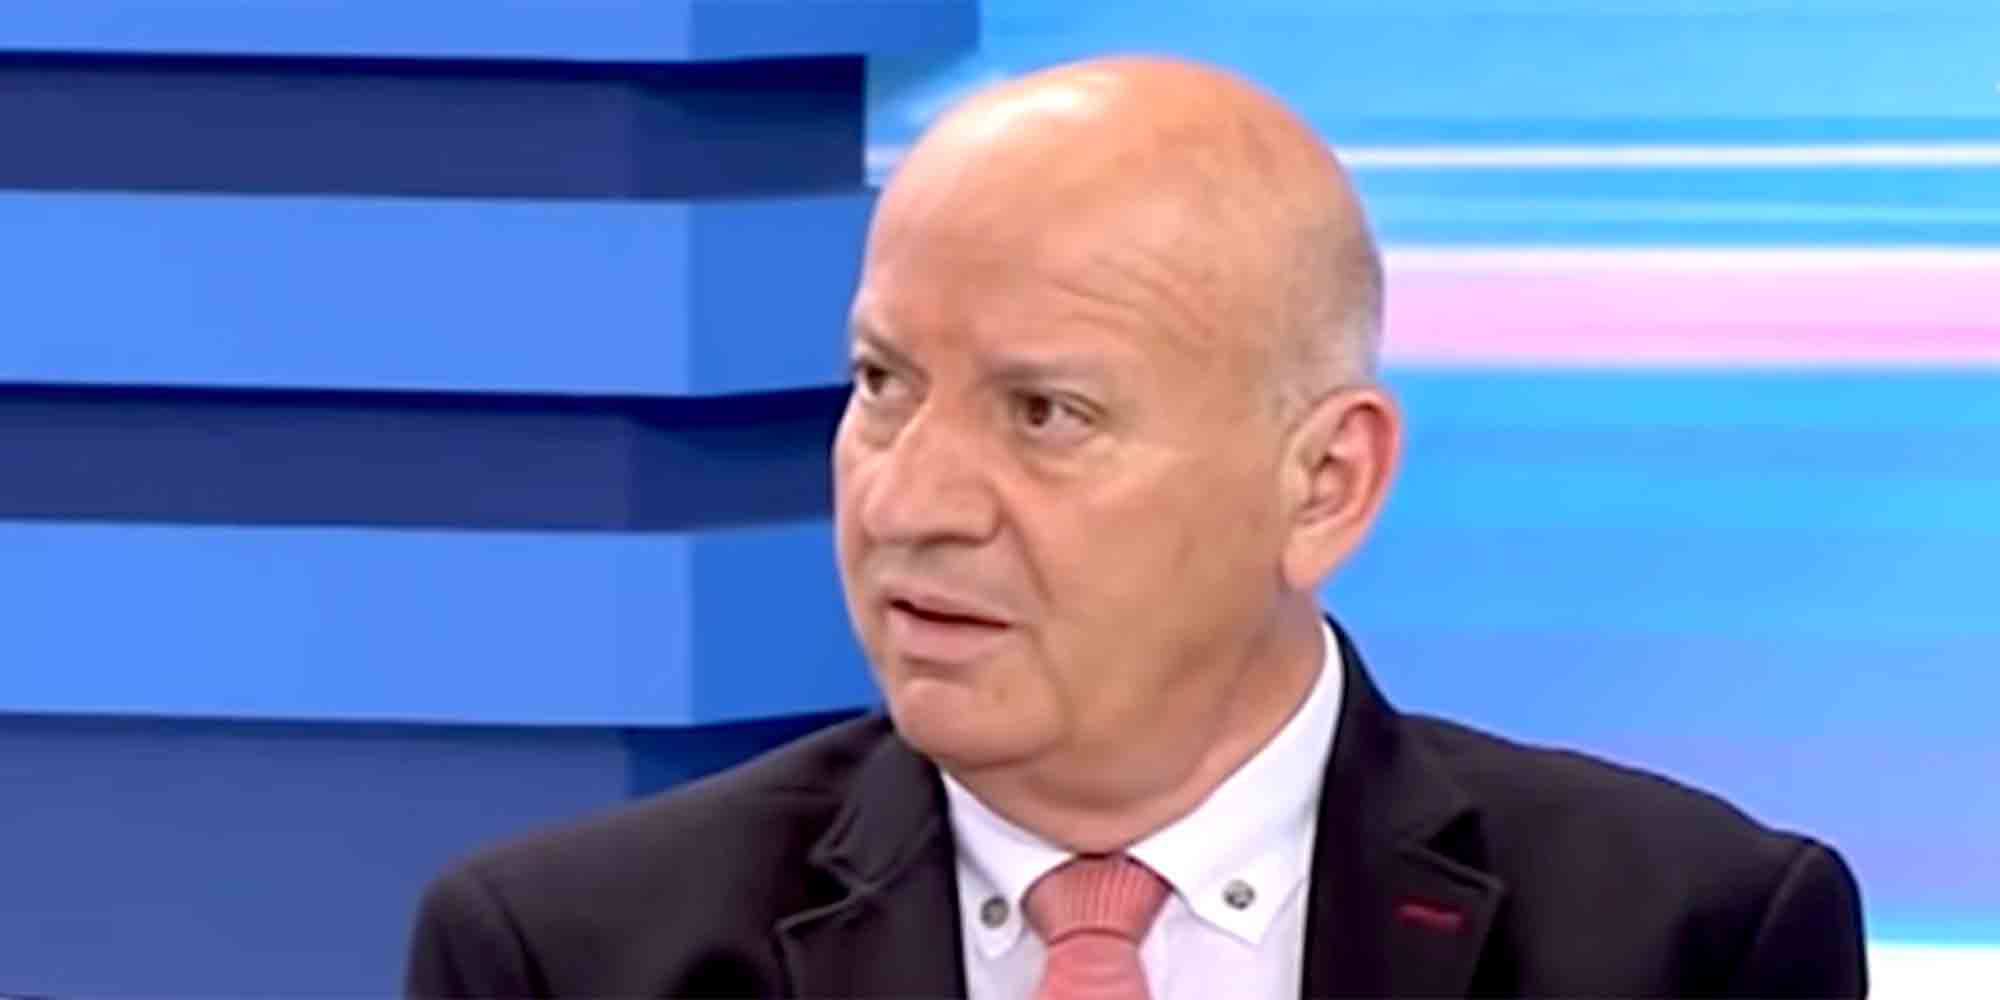 Ο Θανάσης Κατερινόπουλος μίλησε για την Greek Mafia